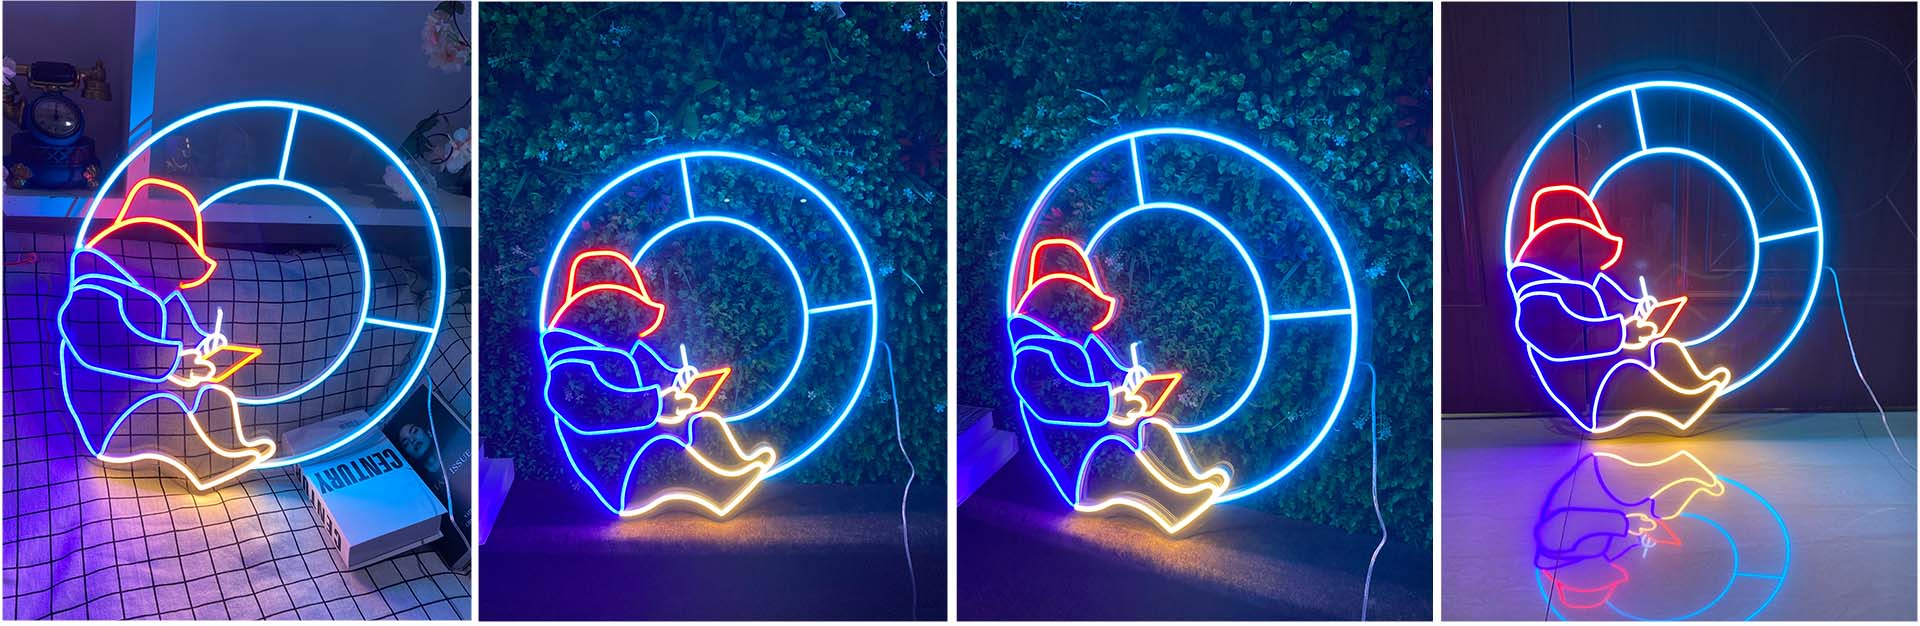 Paddington bear neon